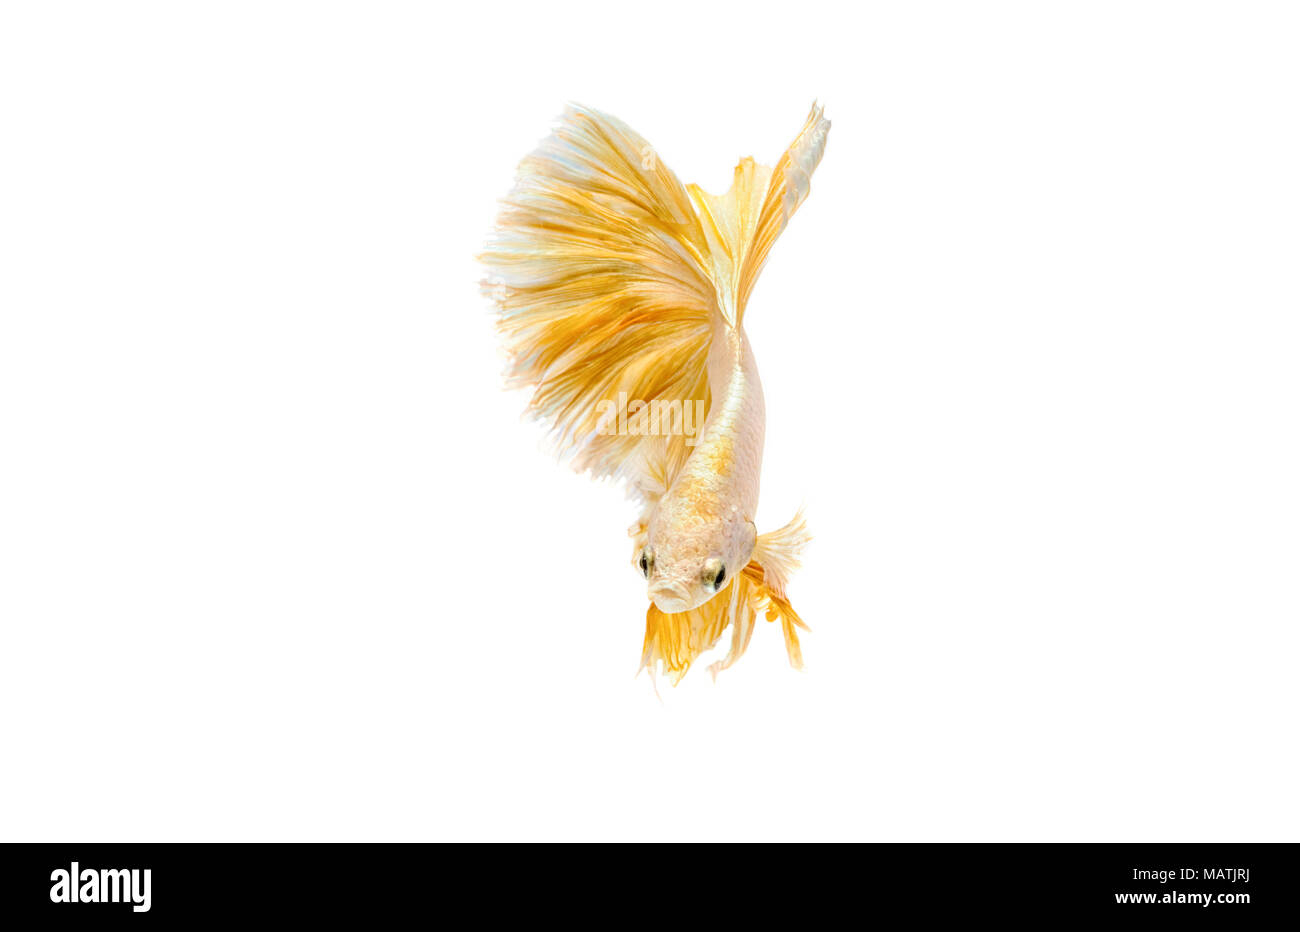 Momento commovente di oro siamese fighting fish isolati su sfondo bianco Foto Stock